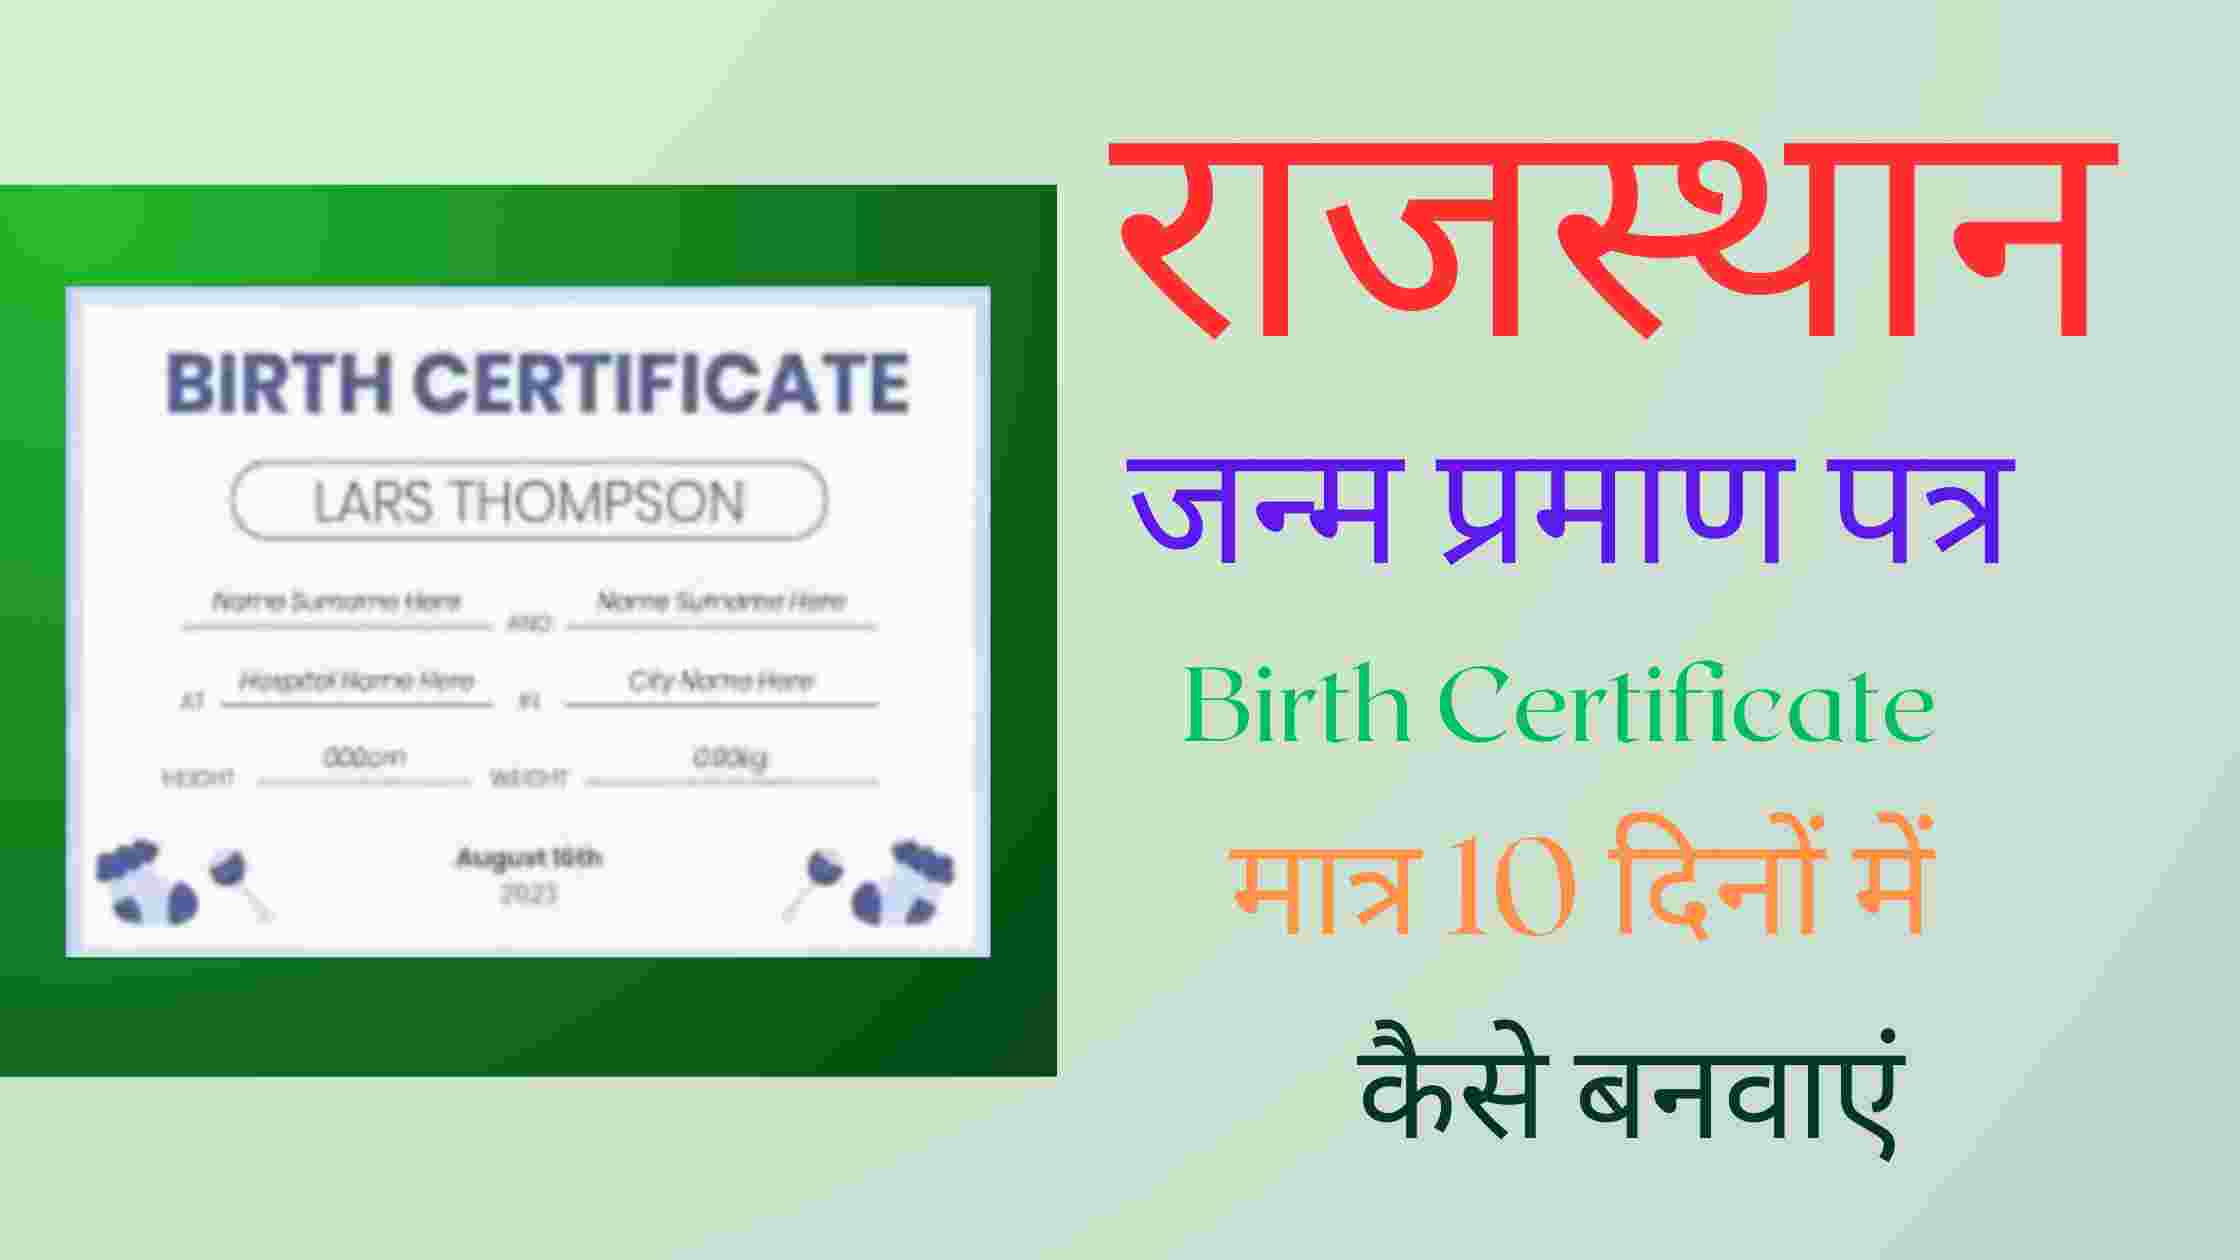 Birth Certificate Kaise Banaye | घर बैठे ऑनलाइन जन्म प्रमाण पत्र का आवेदन कैसे करें जाने संपूर्ण जानकारी